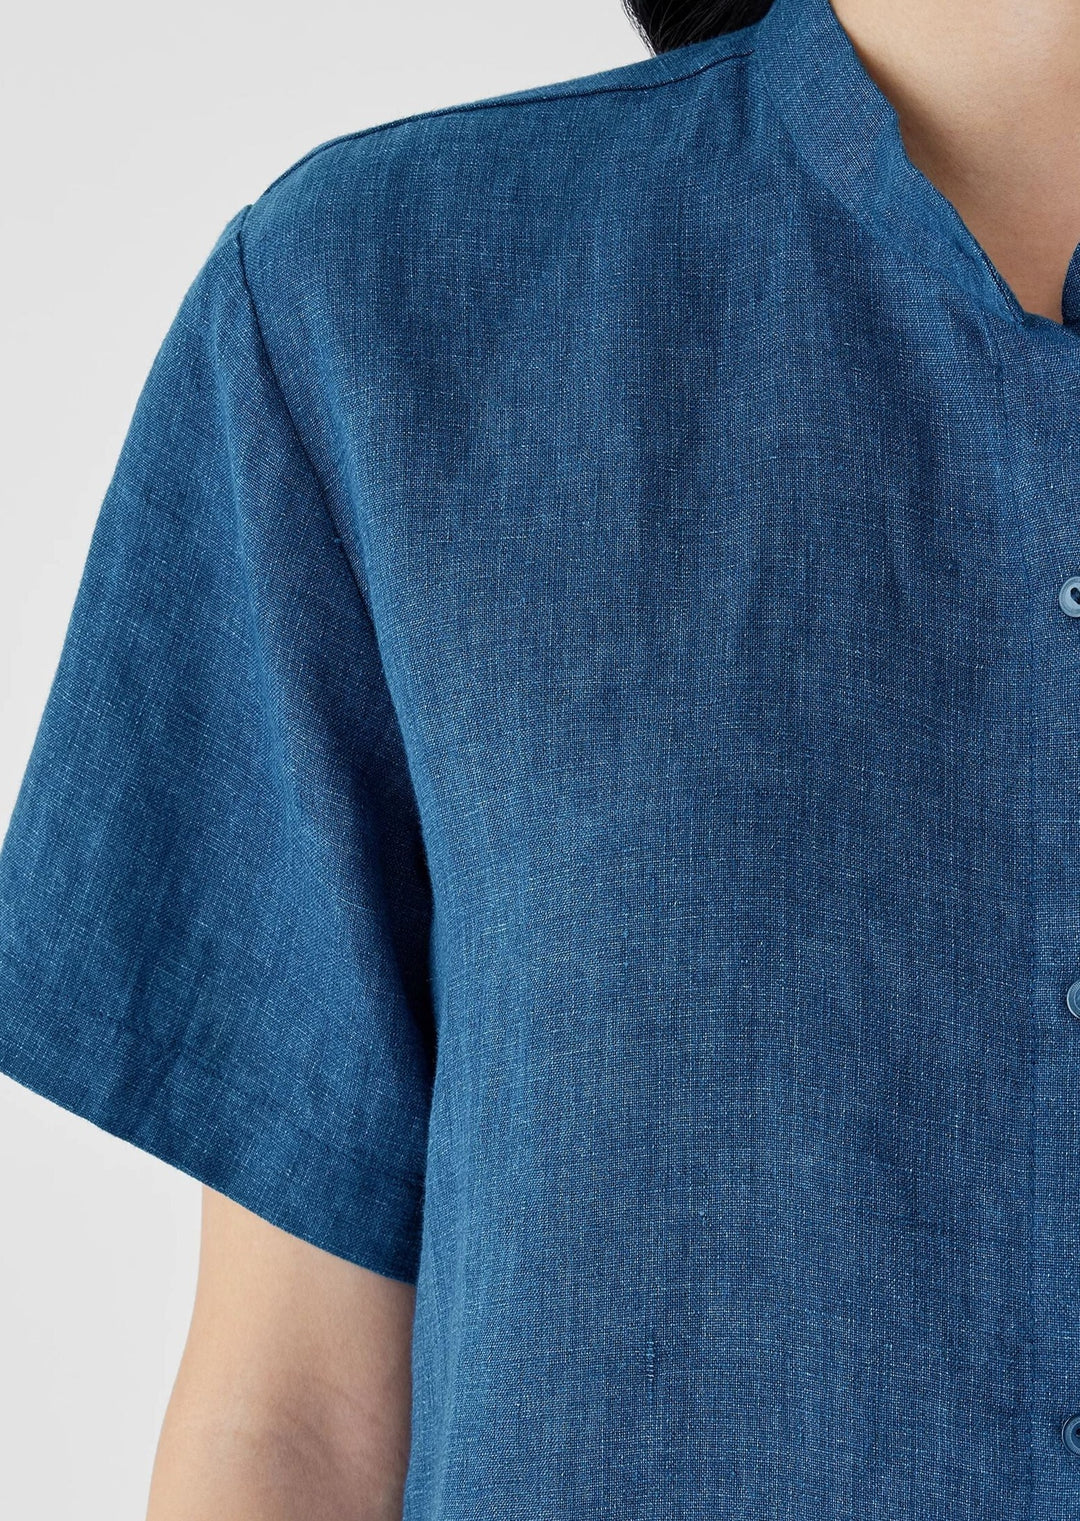 Eileen Fisher - Organic Linen Délavé Band Collar Shirt